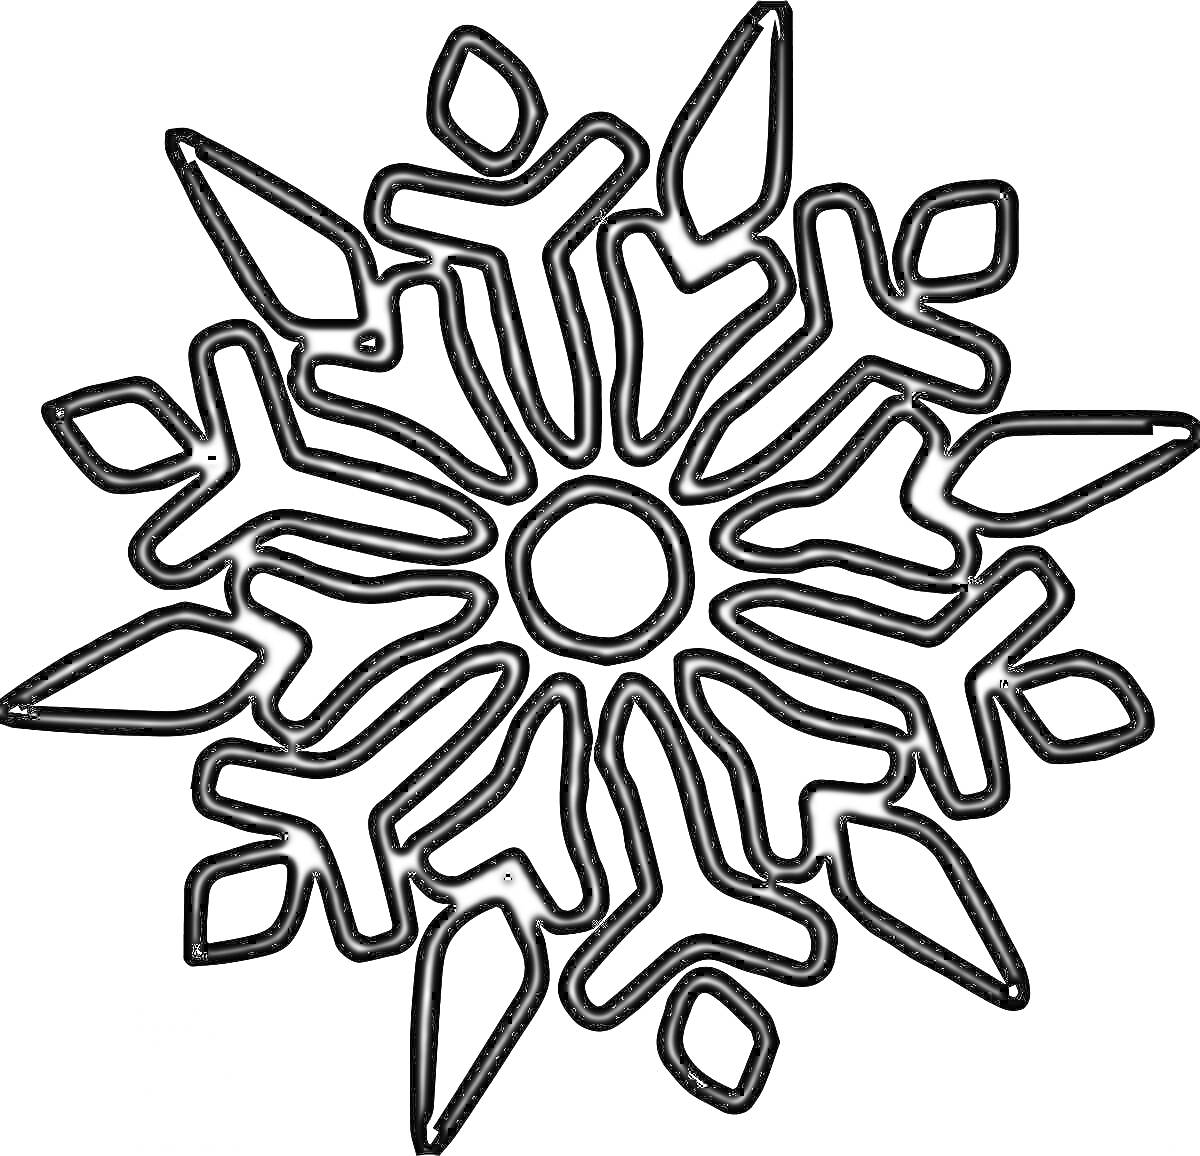 Раскраска Снежинка с шестью крупными симметричными ответвлениями и центральным кругом